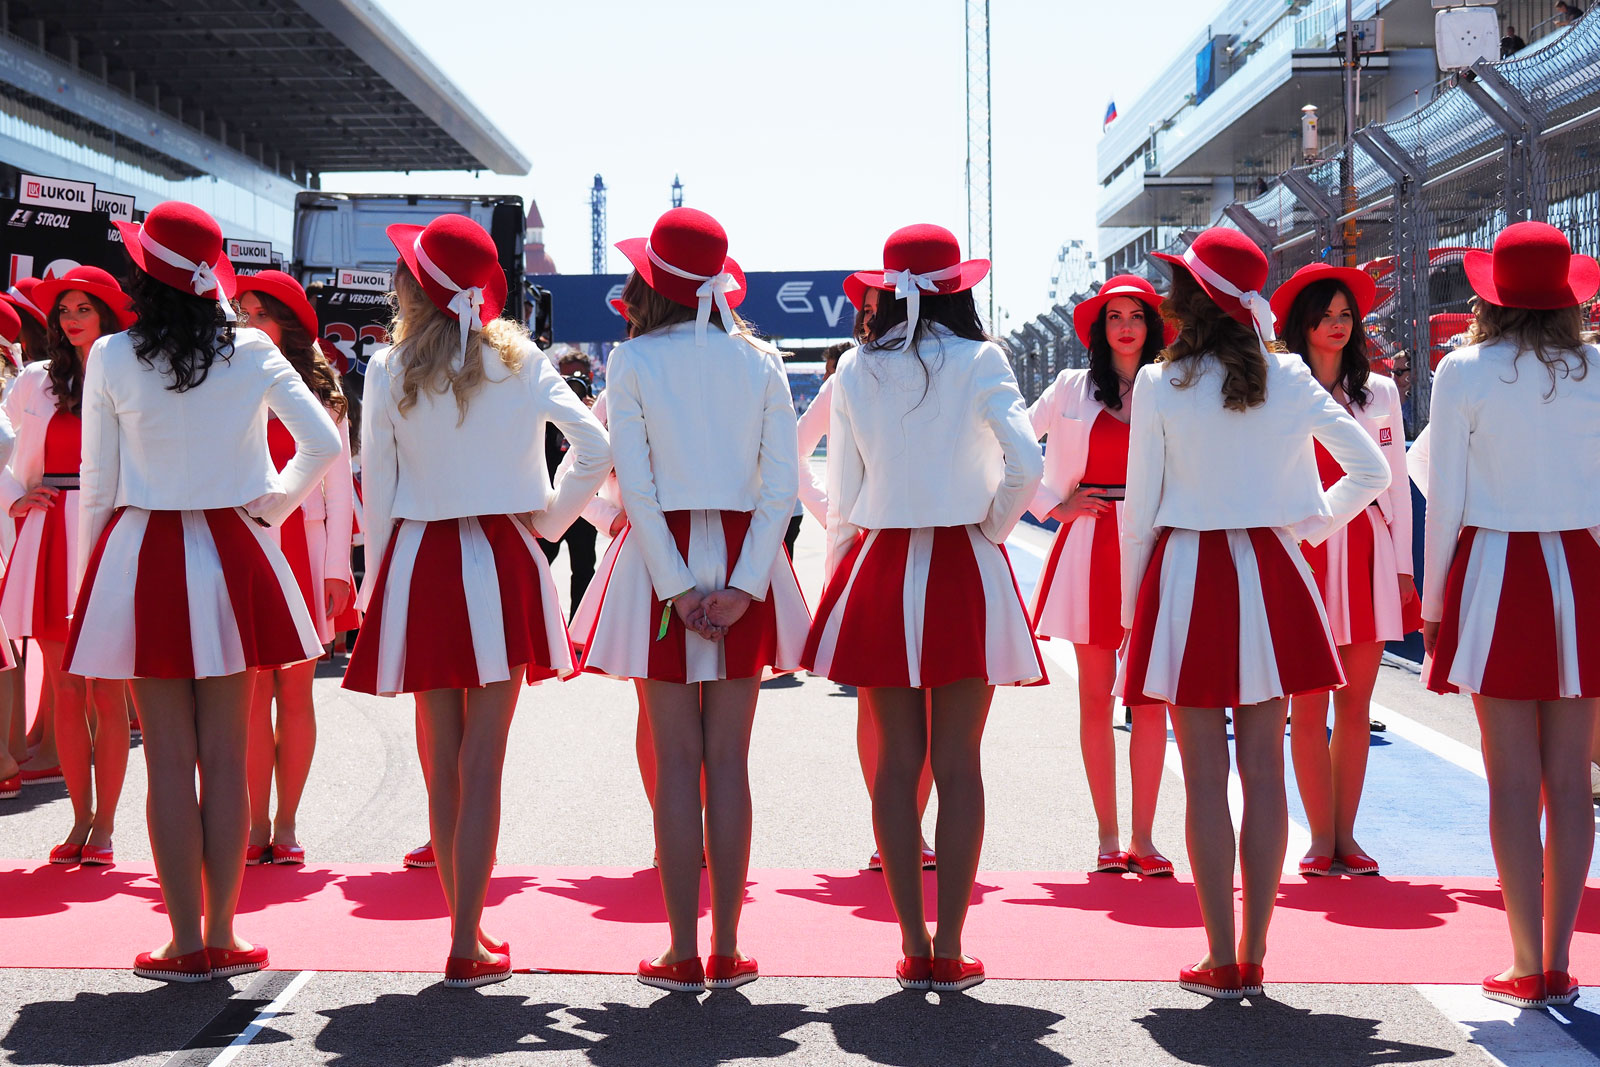 【F1ビューティー】2017 Rd.4 ロシアGP編「ロシアらしい赤白のドレス」